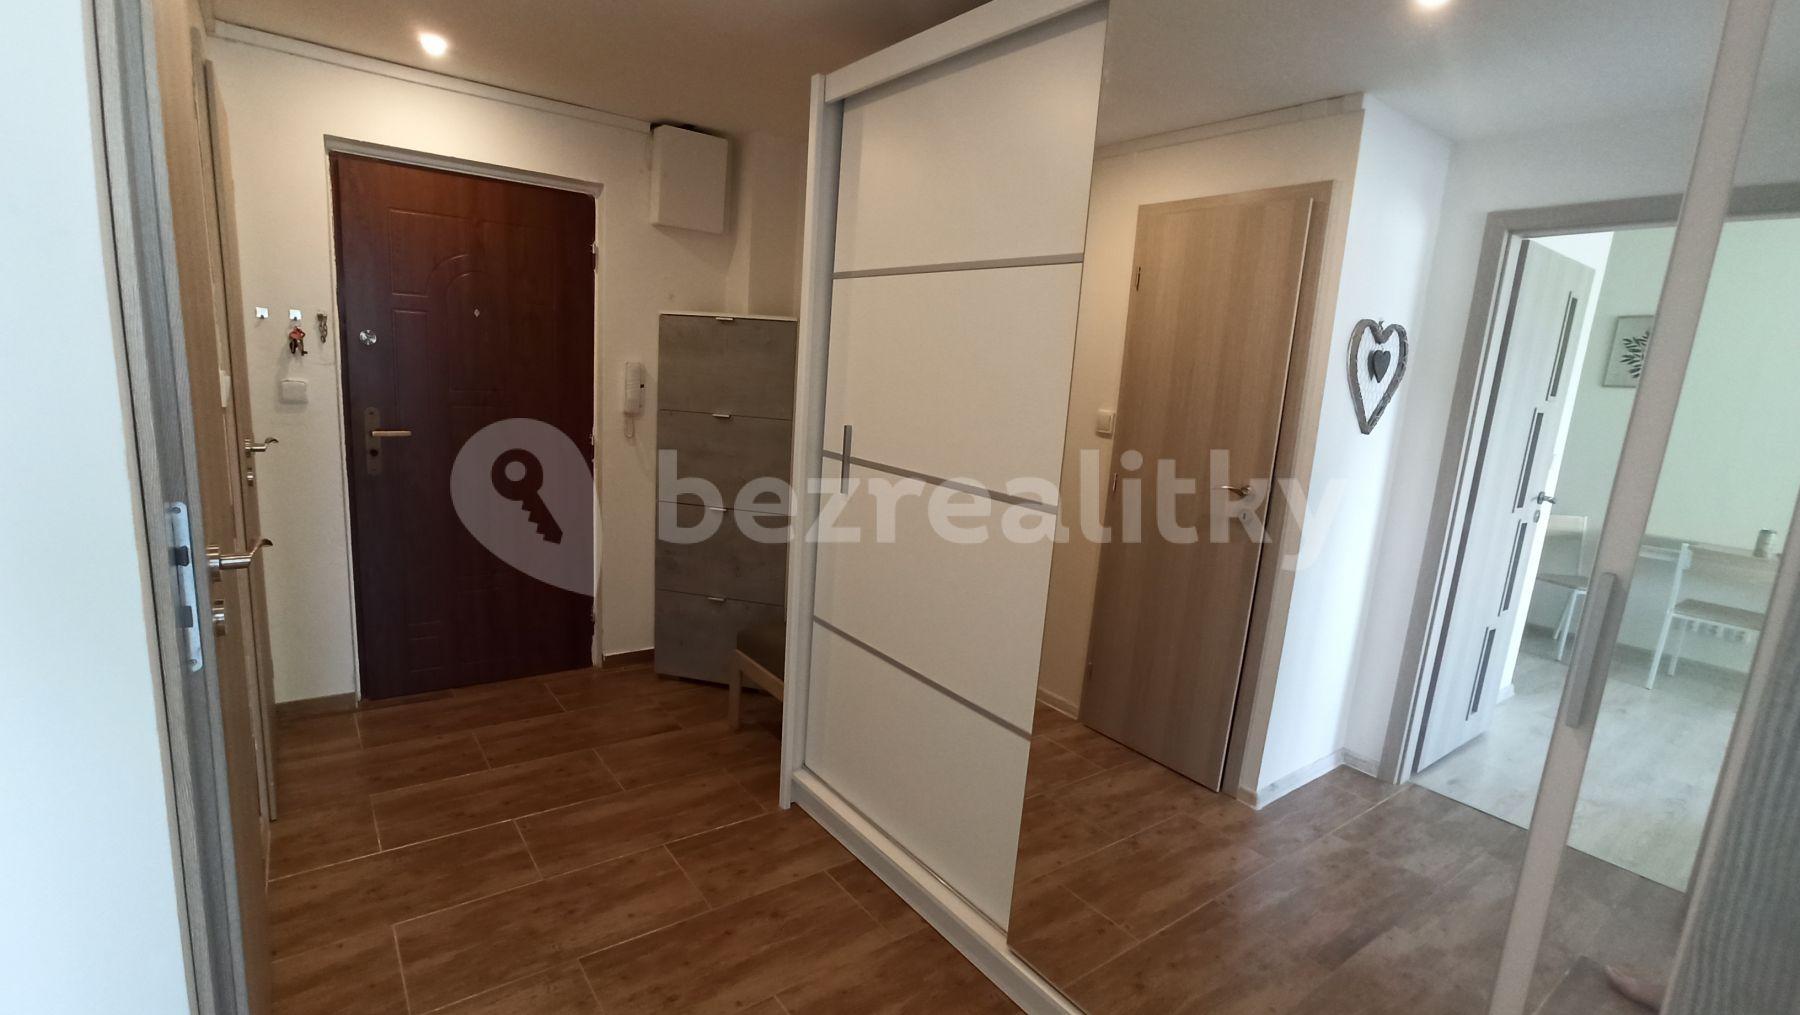 1 bedroom with open-plan kitchen flat to rent, 43 m², Norská, Kladno, Středočeský Region